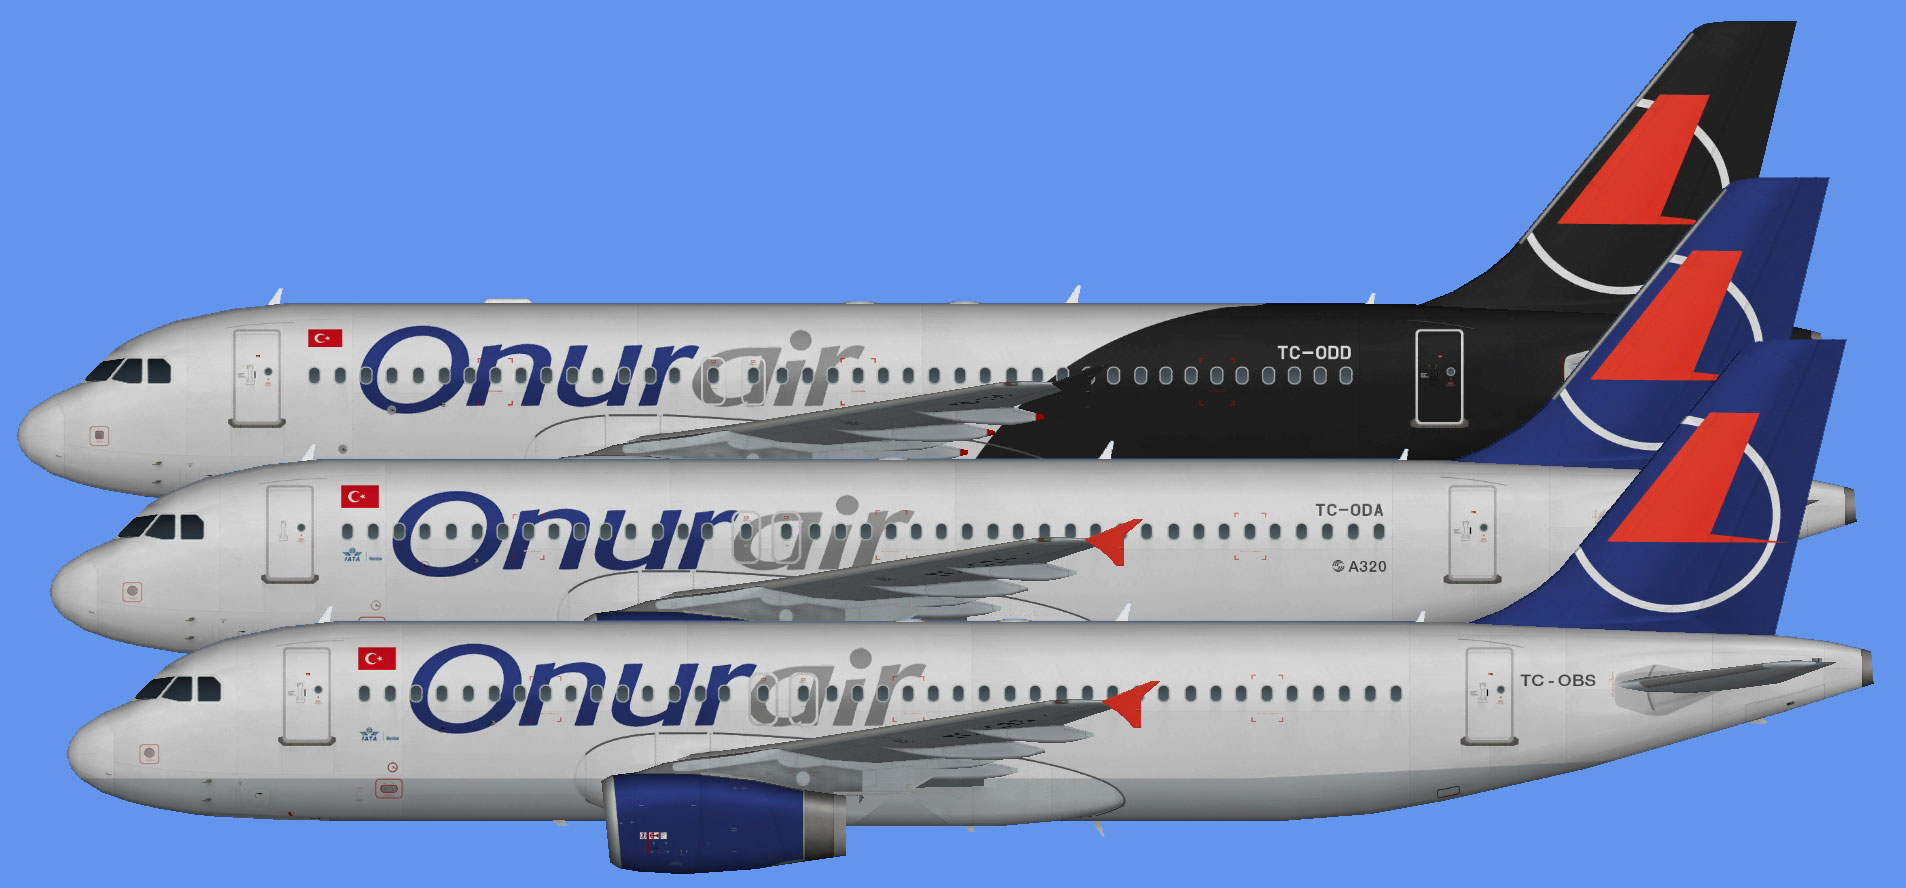 Onur Air Airbus A320